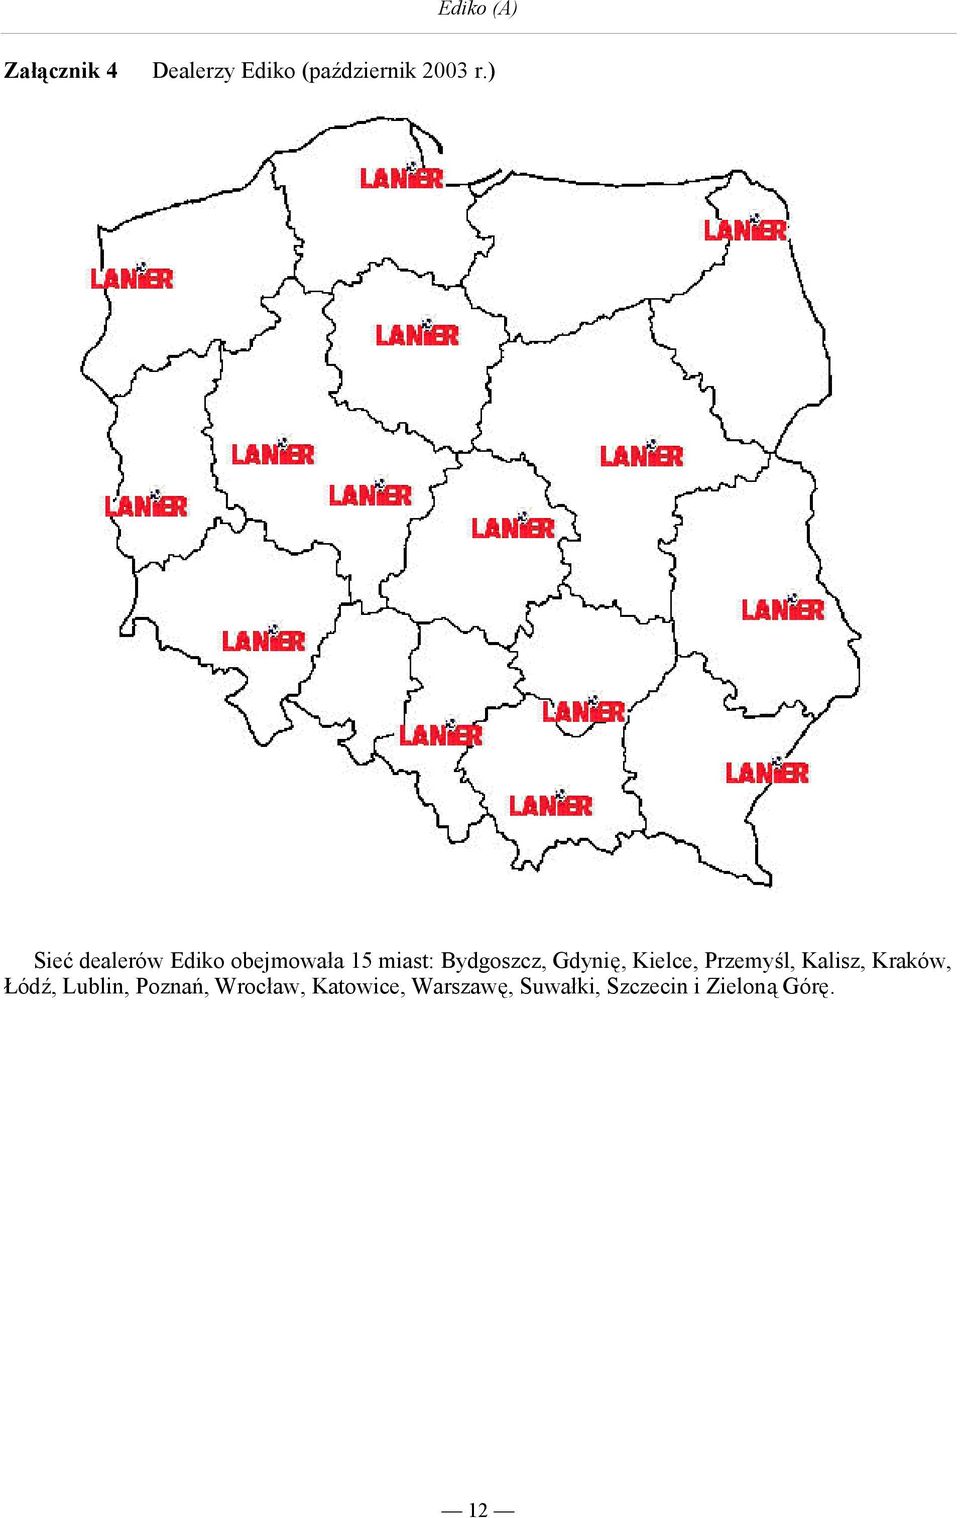 Gdynię, Kielce, Przemyśl, Kalisz, Kraków, Łódź, Lublin,